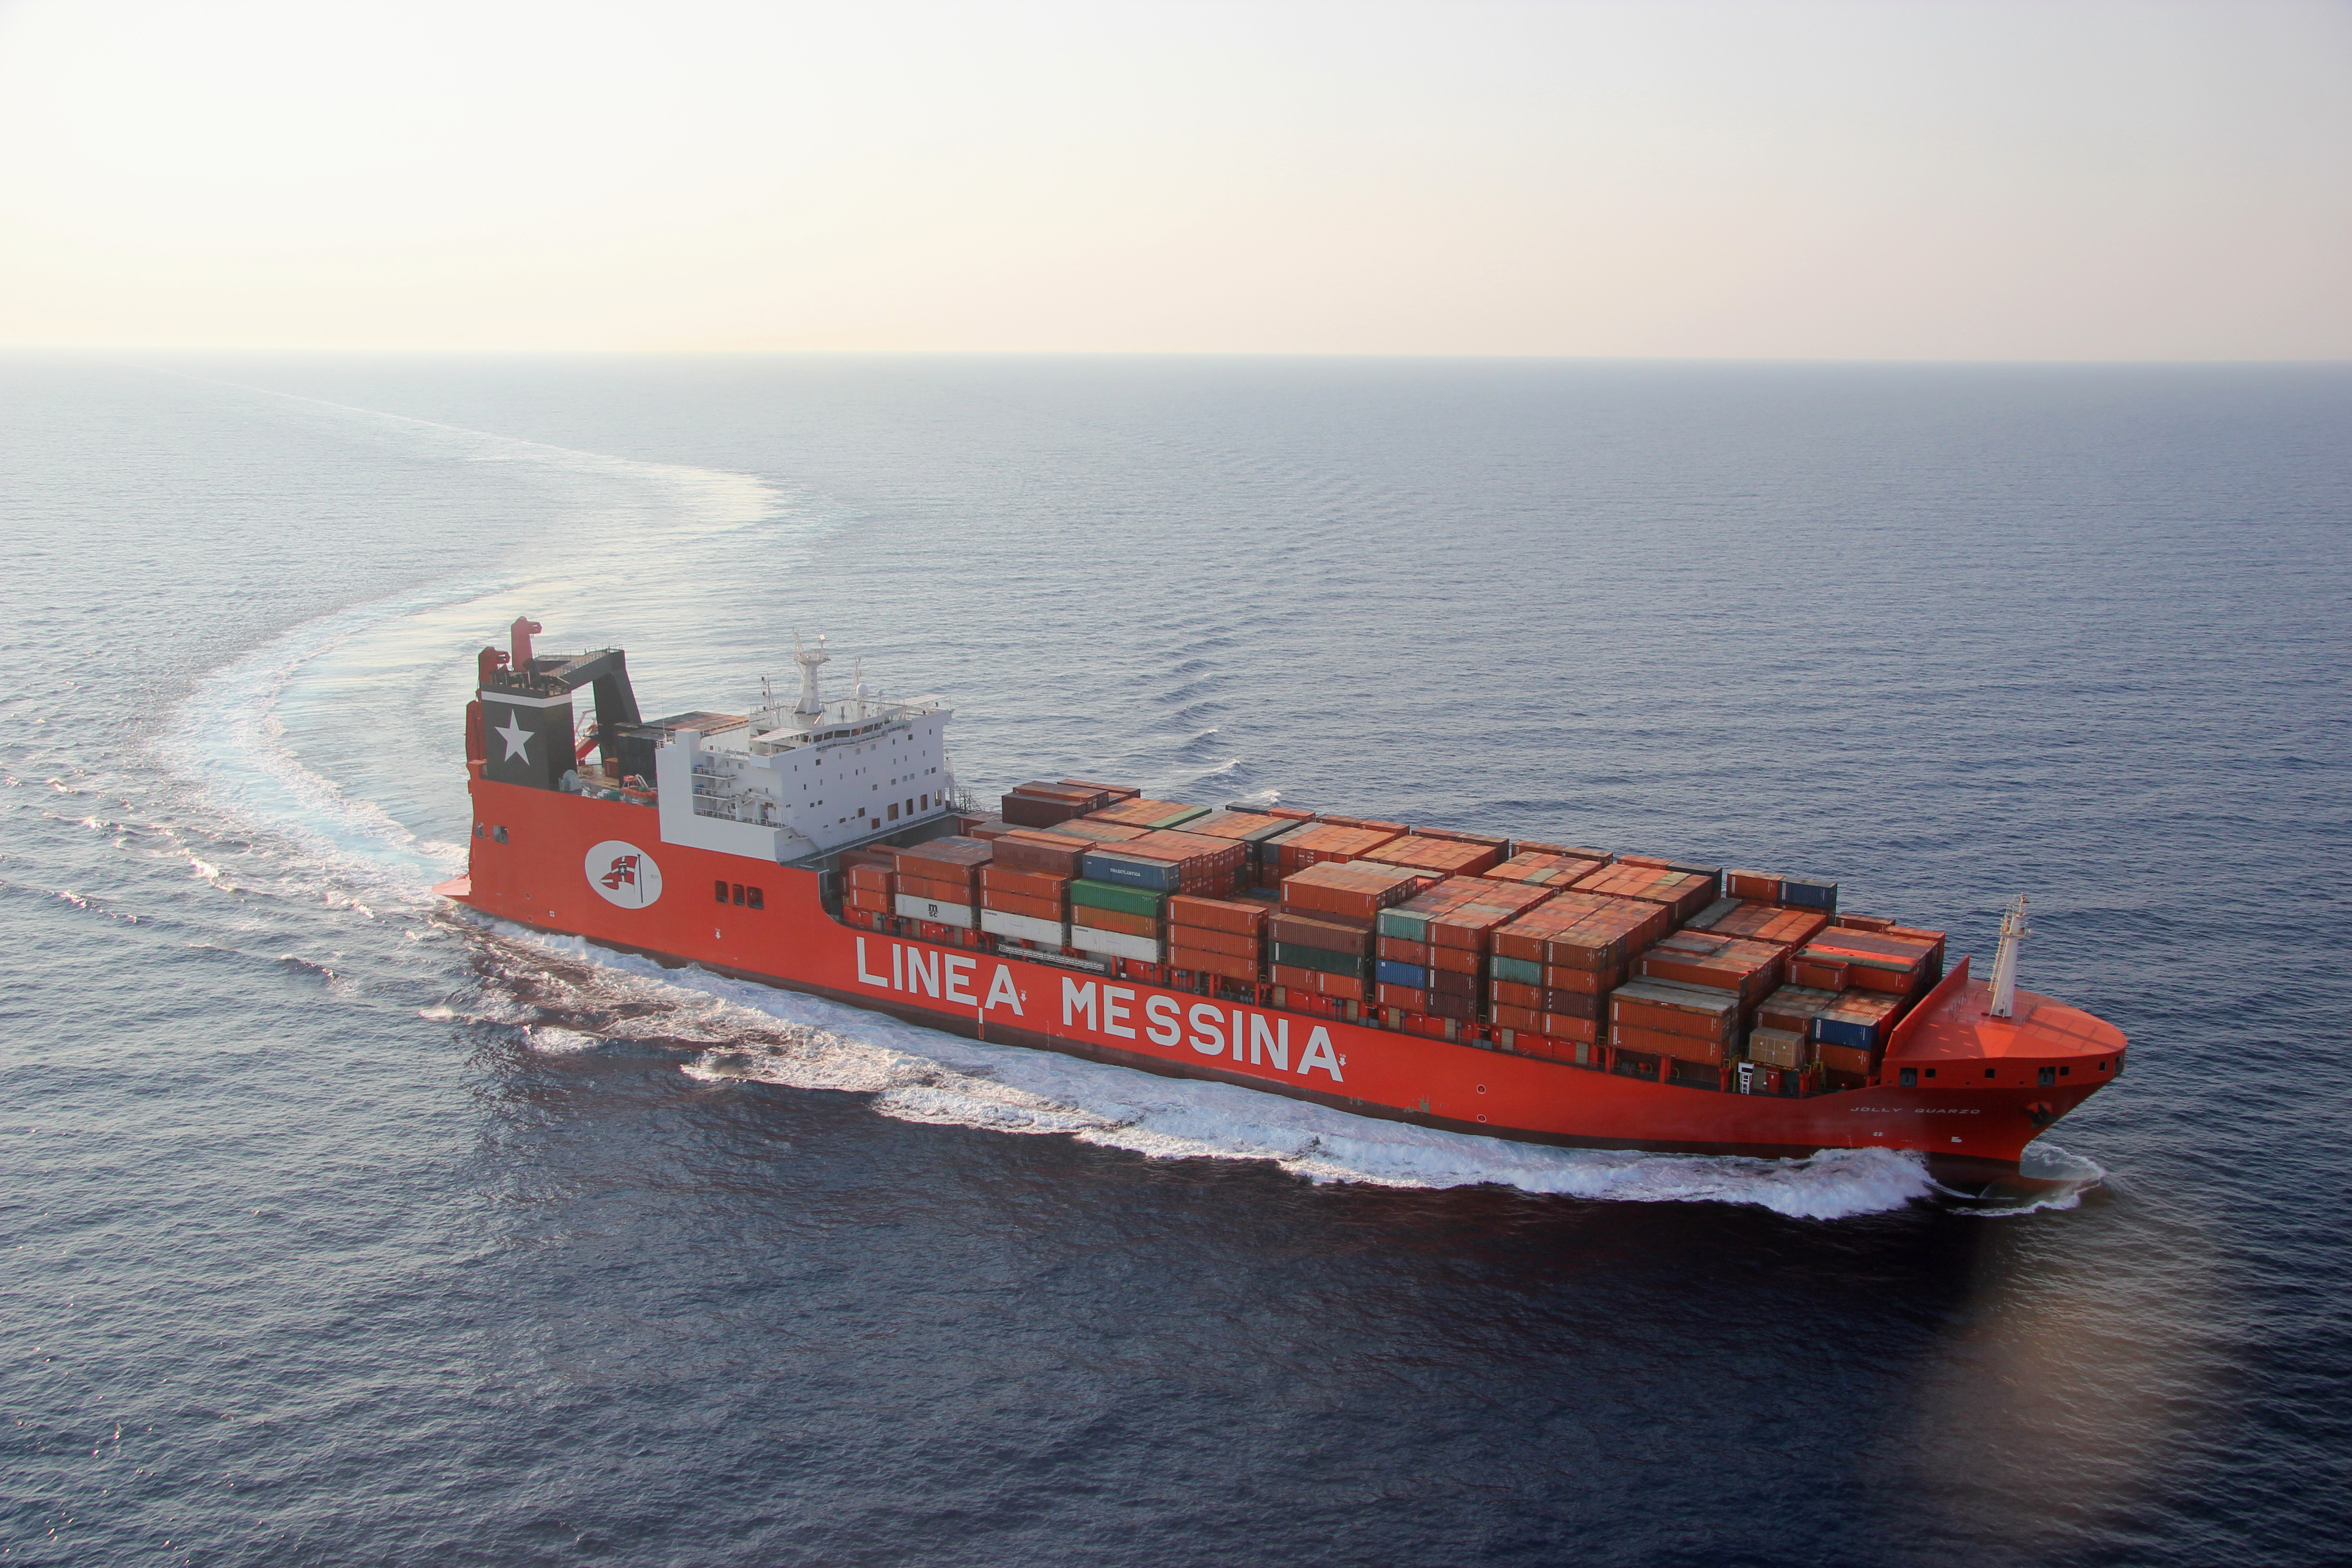 Il Gruppo Messina collega oggi oltre 50 porti e serve 40 diversi Paesi